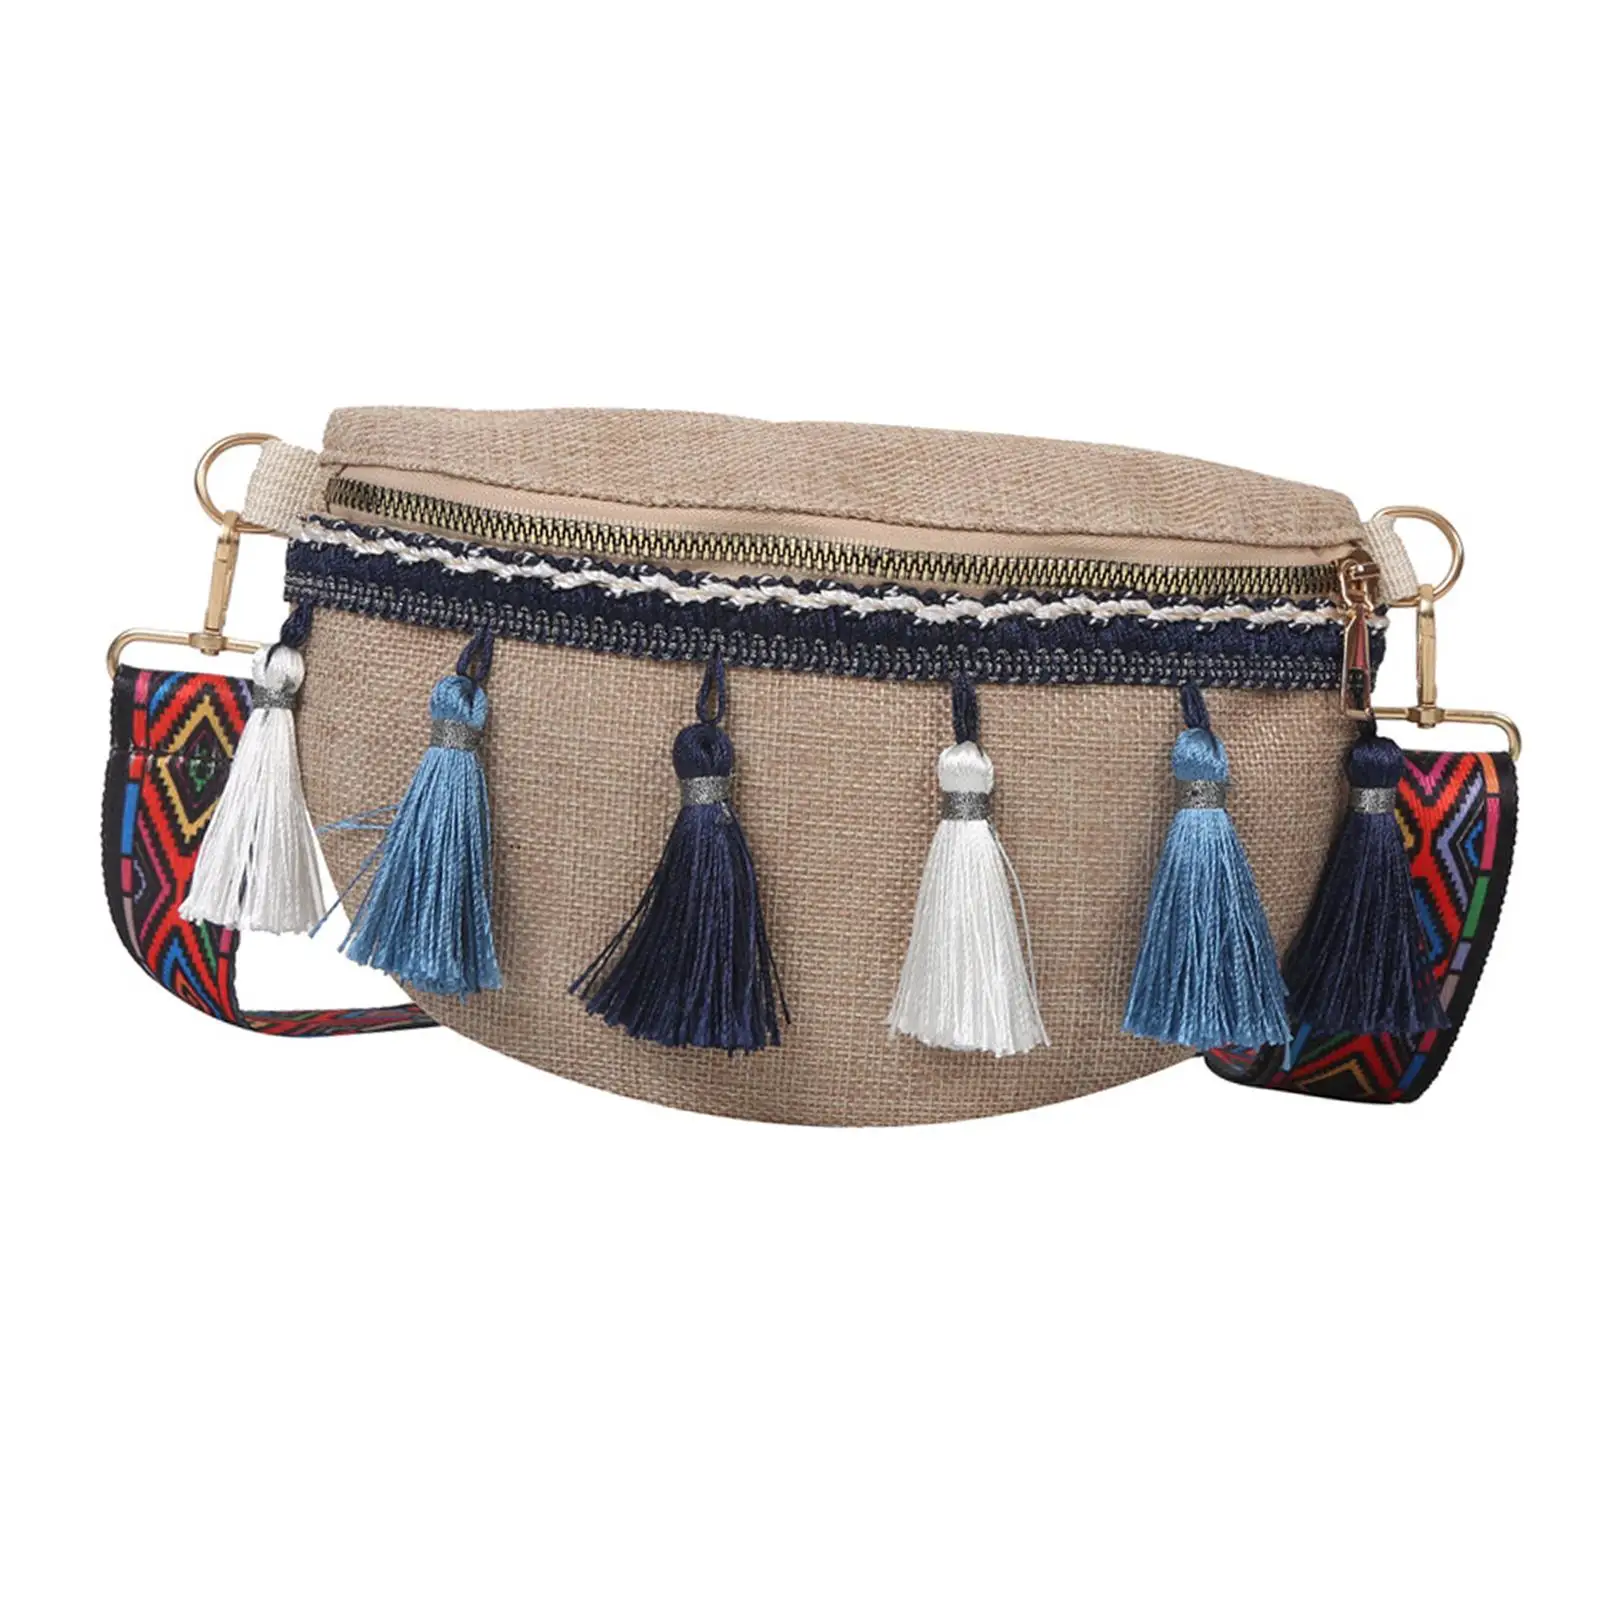 Поясная сумка в богемном стиле, поясная сумка, поясная сумка, регулируемый плечевой ремень, сумка для бега, покупок, пляжа, летних прогулок